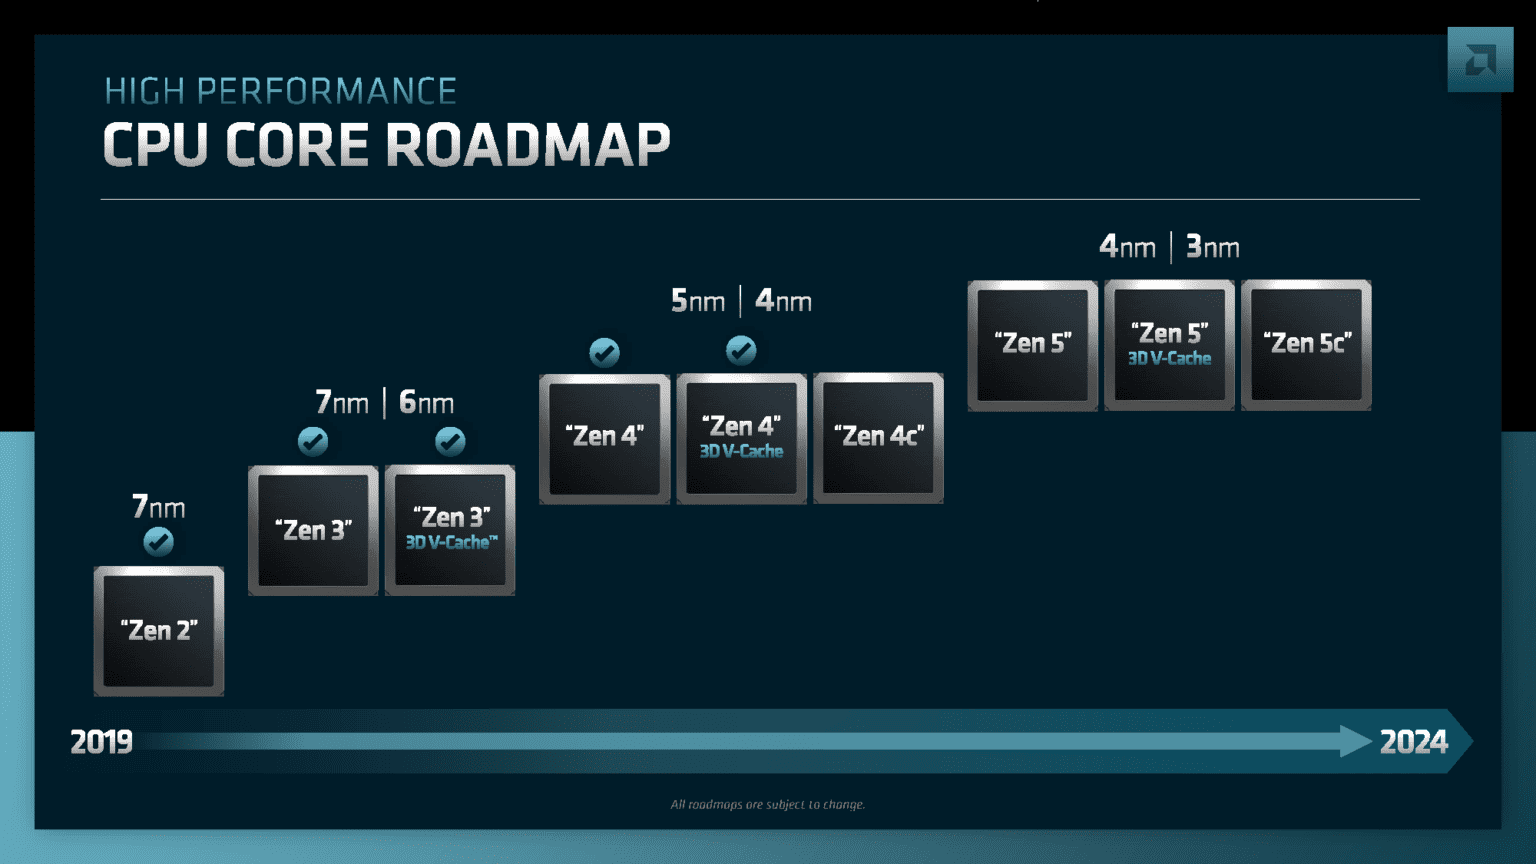 AMDが2024年までのCPUコア・ロードマップを公開 3nm世代のZen 5の概要も明らかに TEXAL